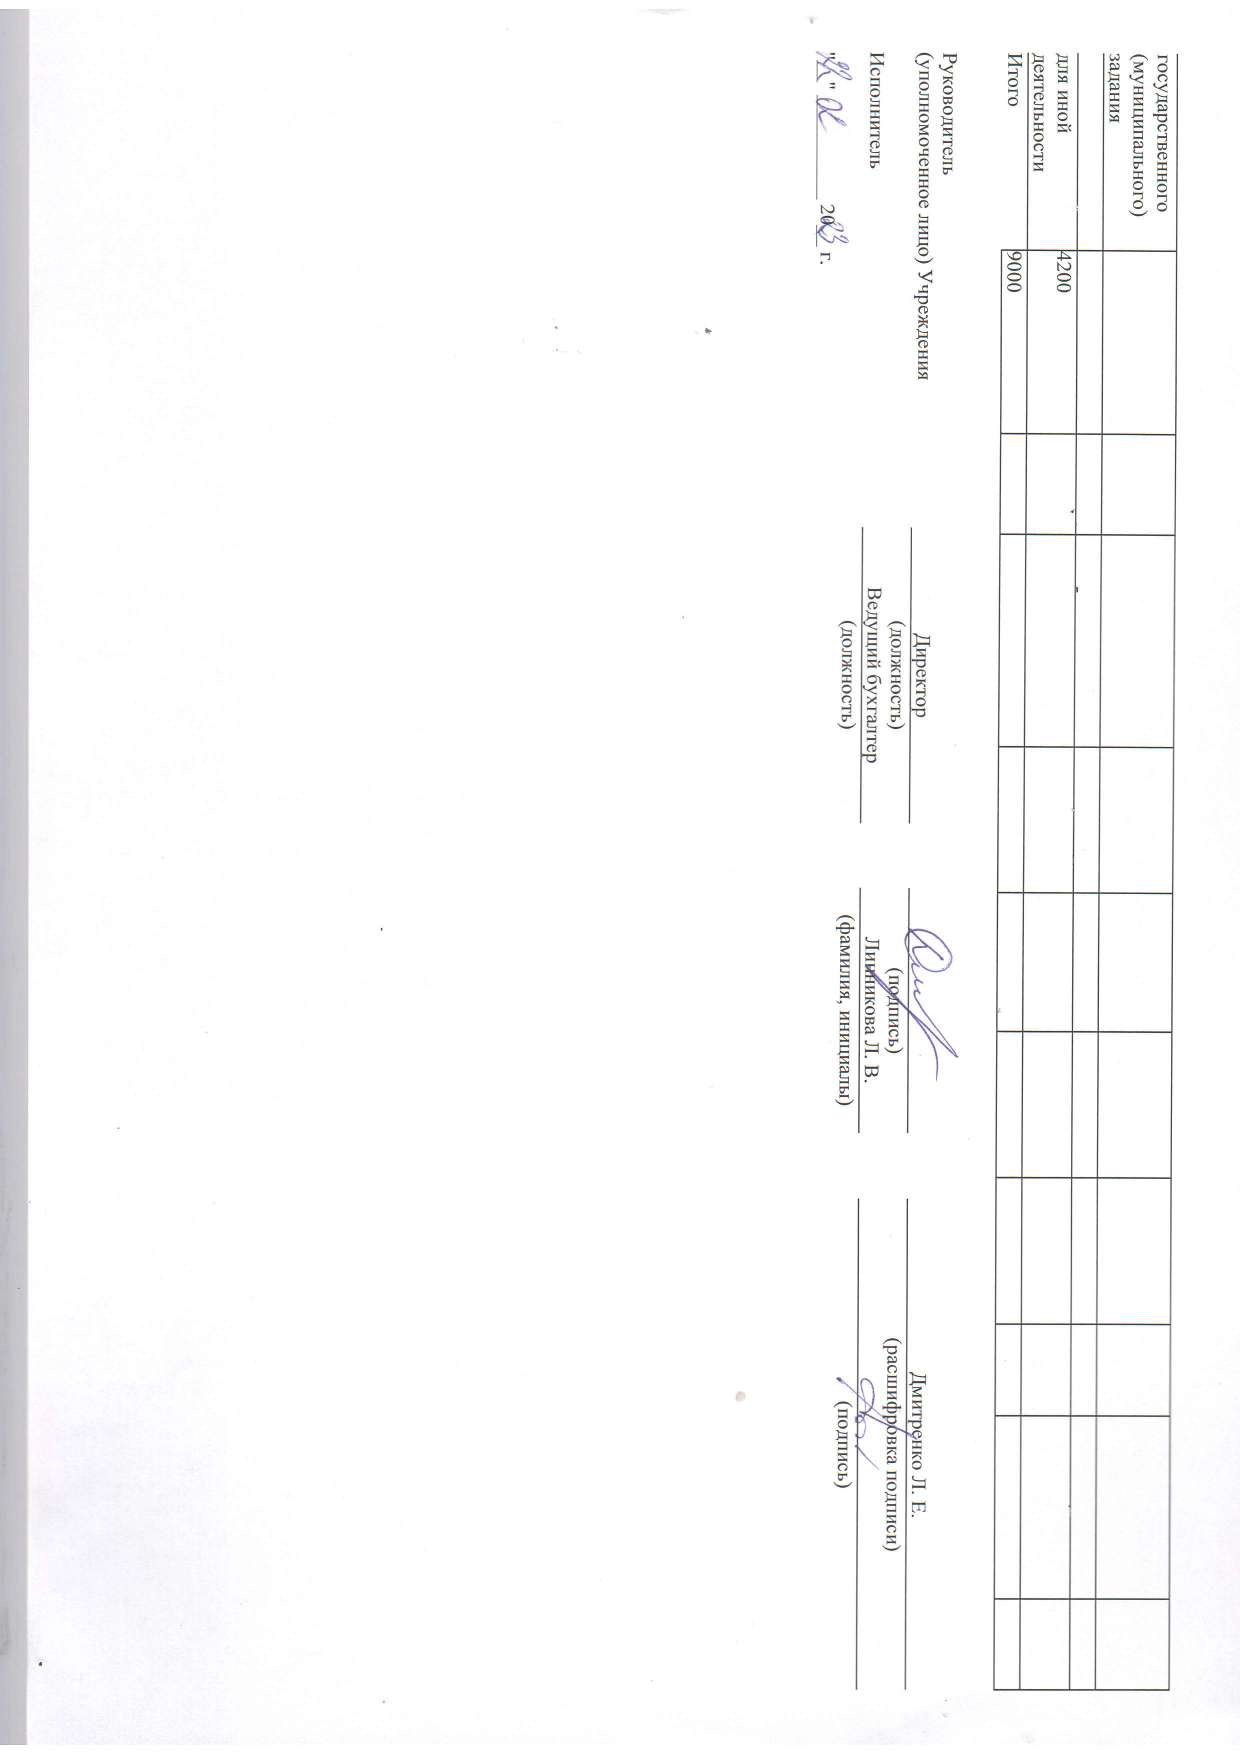 Отчет о результатах деятельности муниципального учреждения на 01.01.2023 г_page-0033.jpg